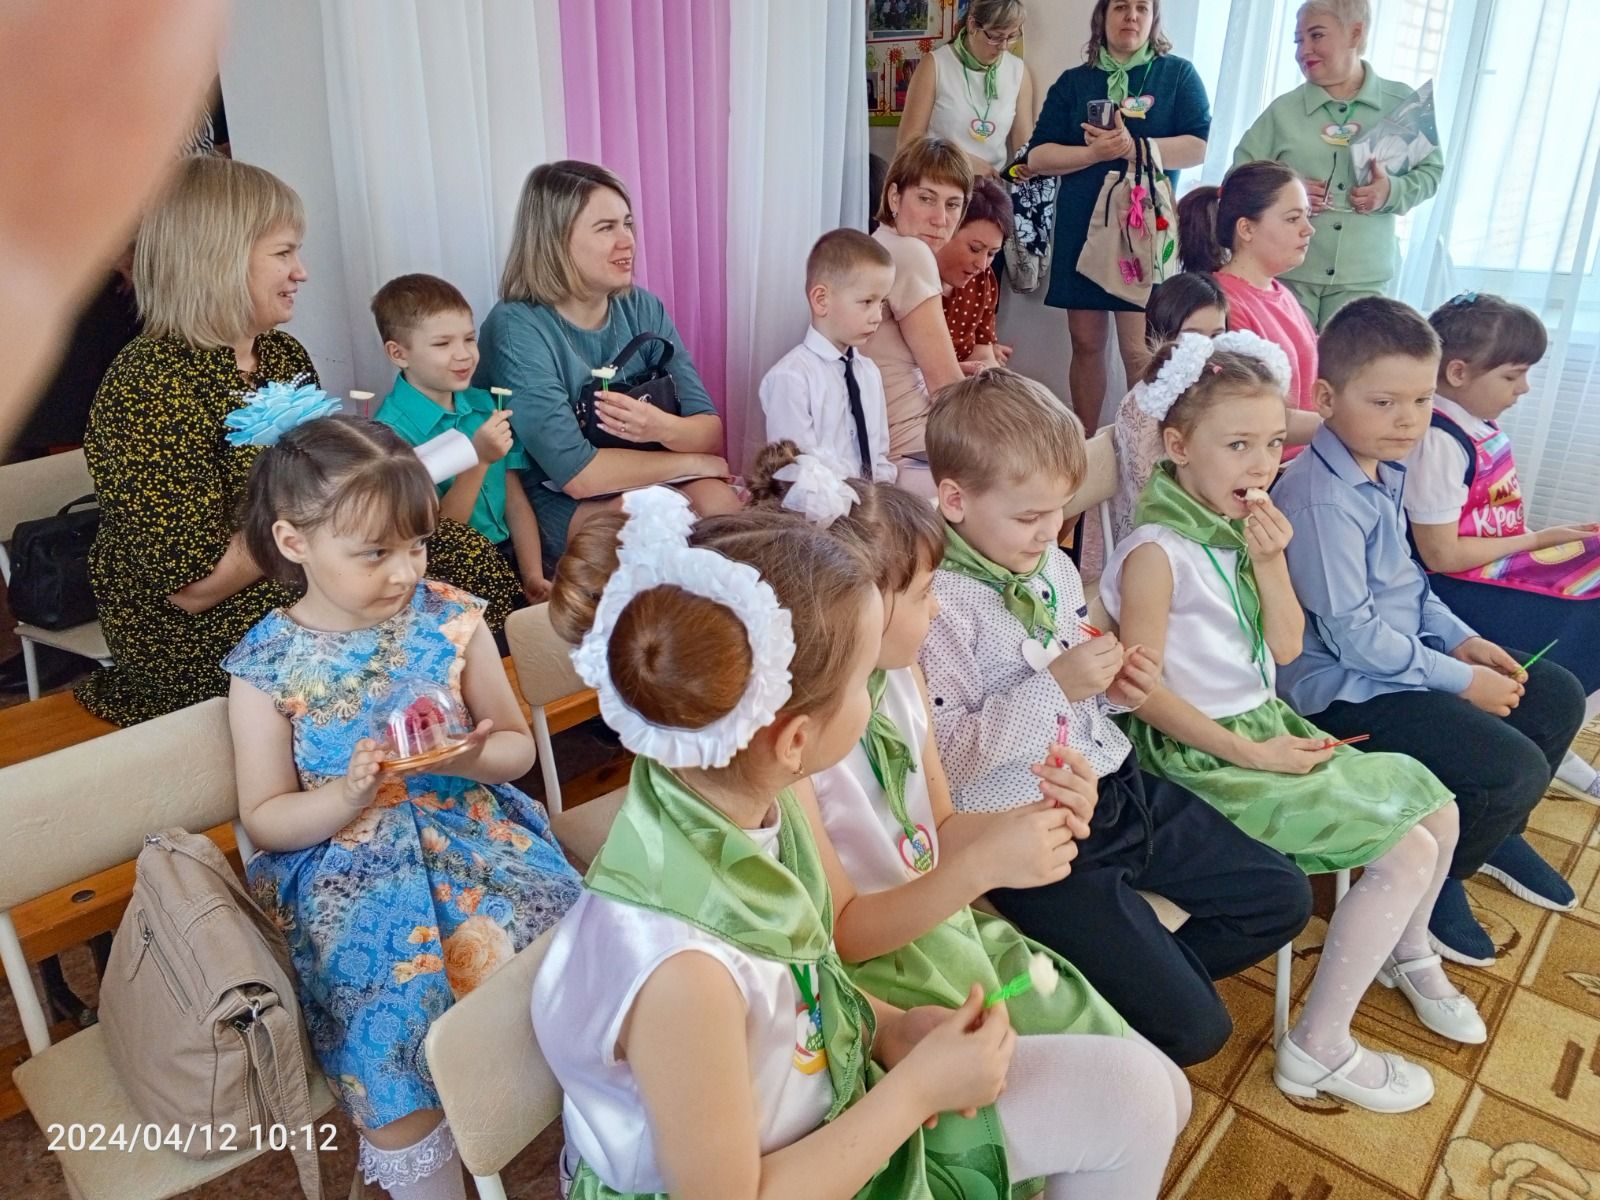 В Болгаре прошла районная научно-практическая конференция для дошкольников "Открытый мир. Старт в науку"